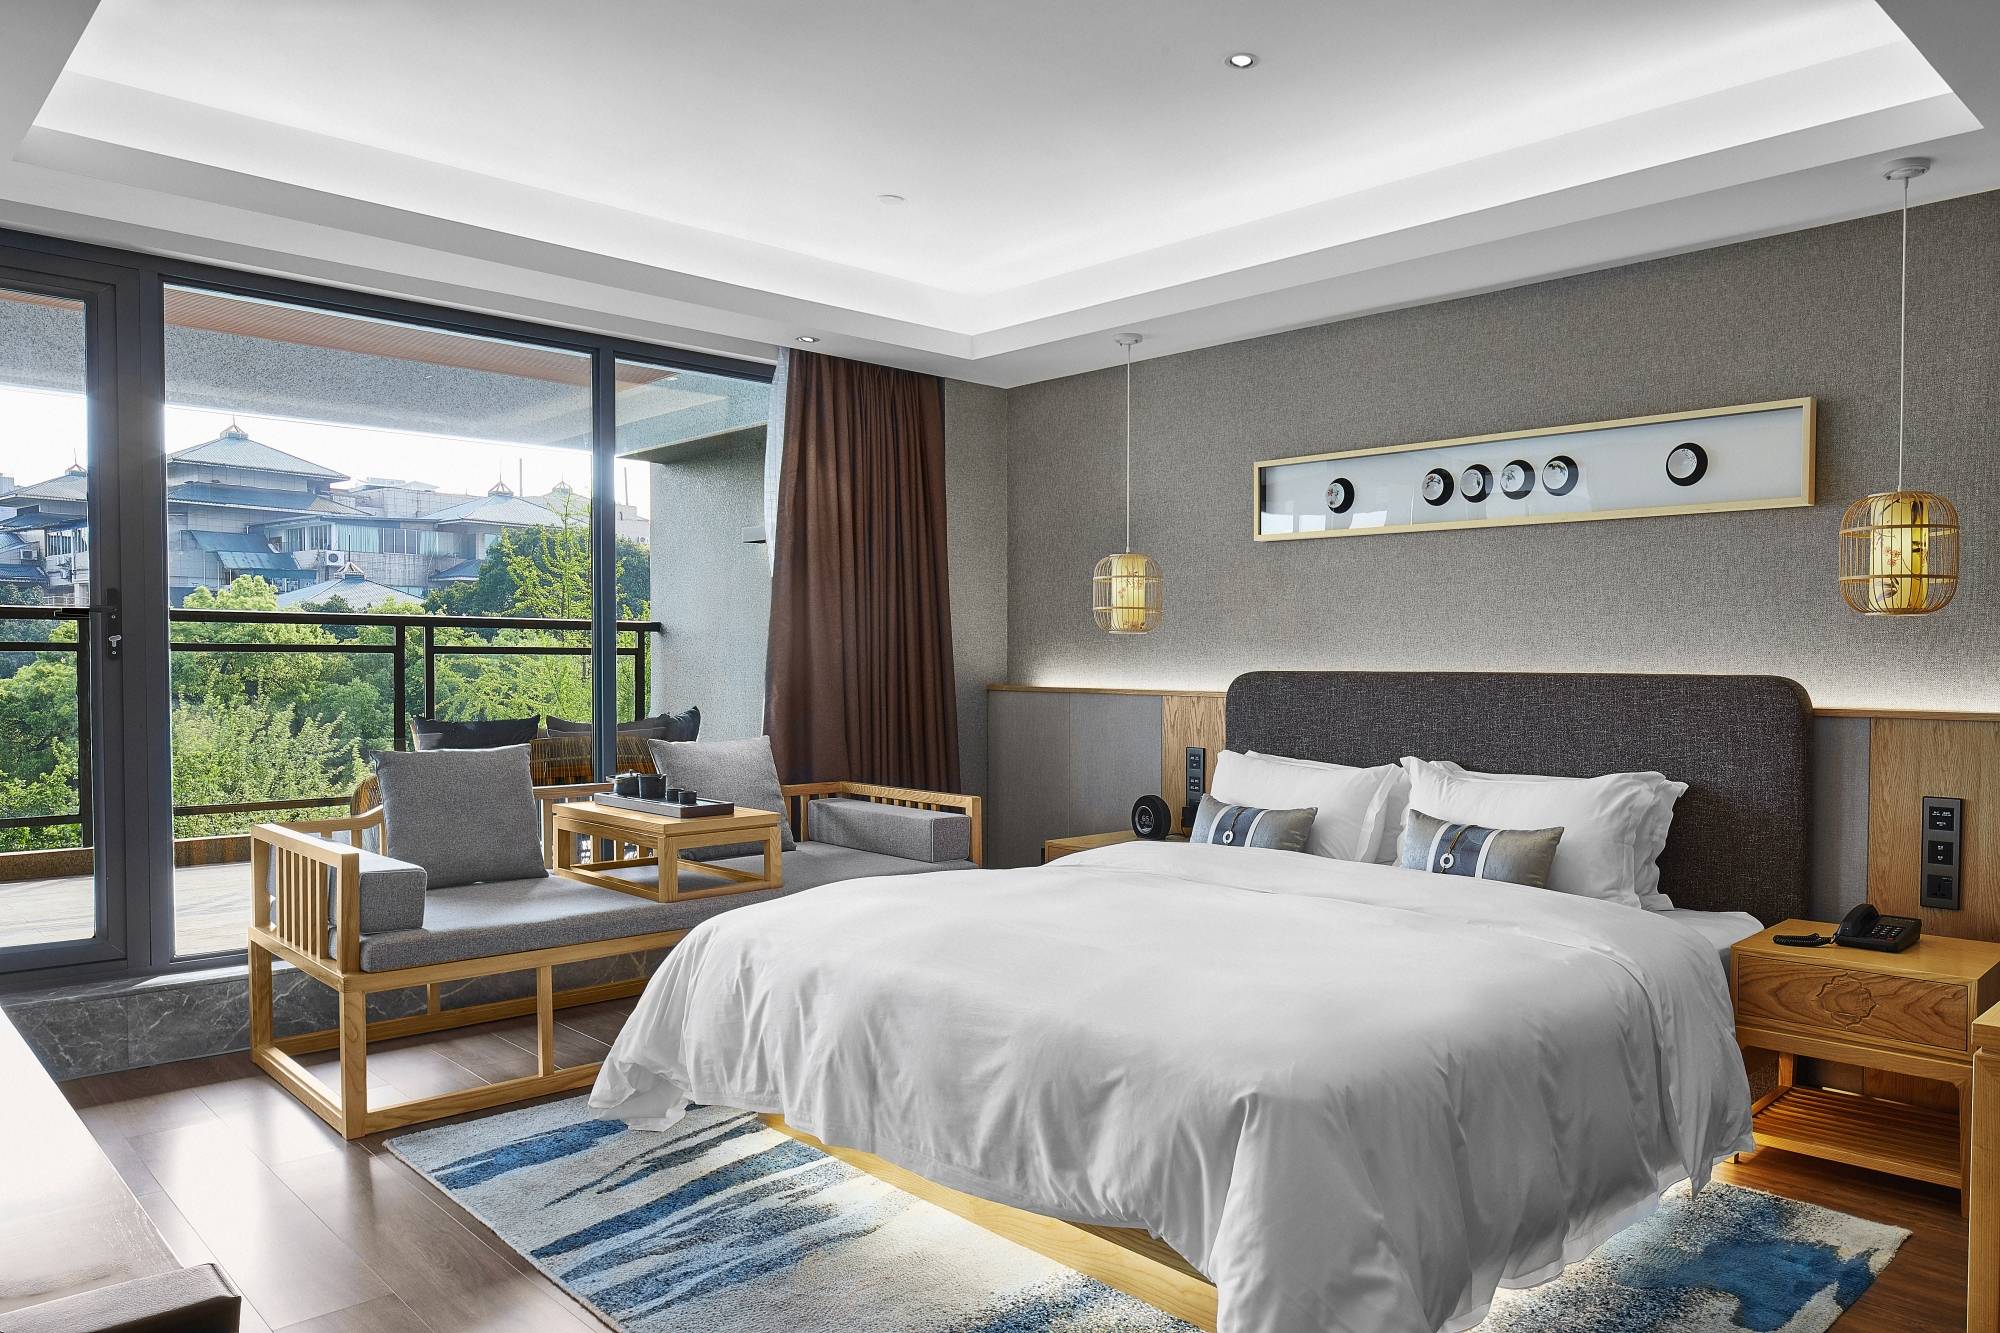 2021桂林酒店美食攻略飞机高铁出行桂林一定要住的6家风景最美桂林酒店